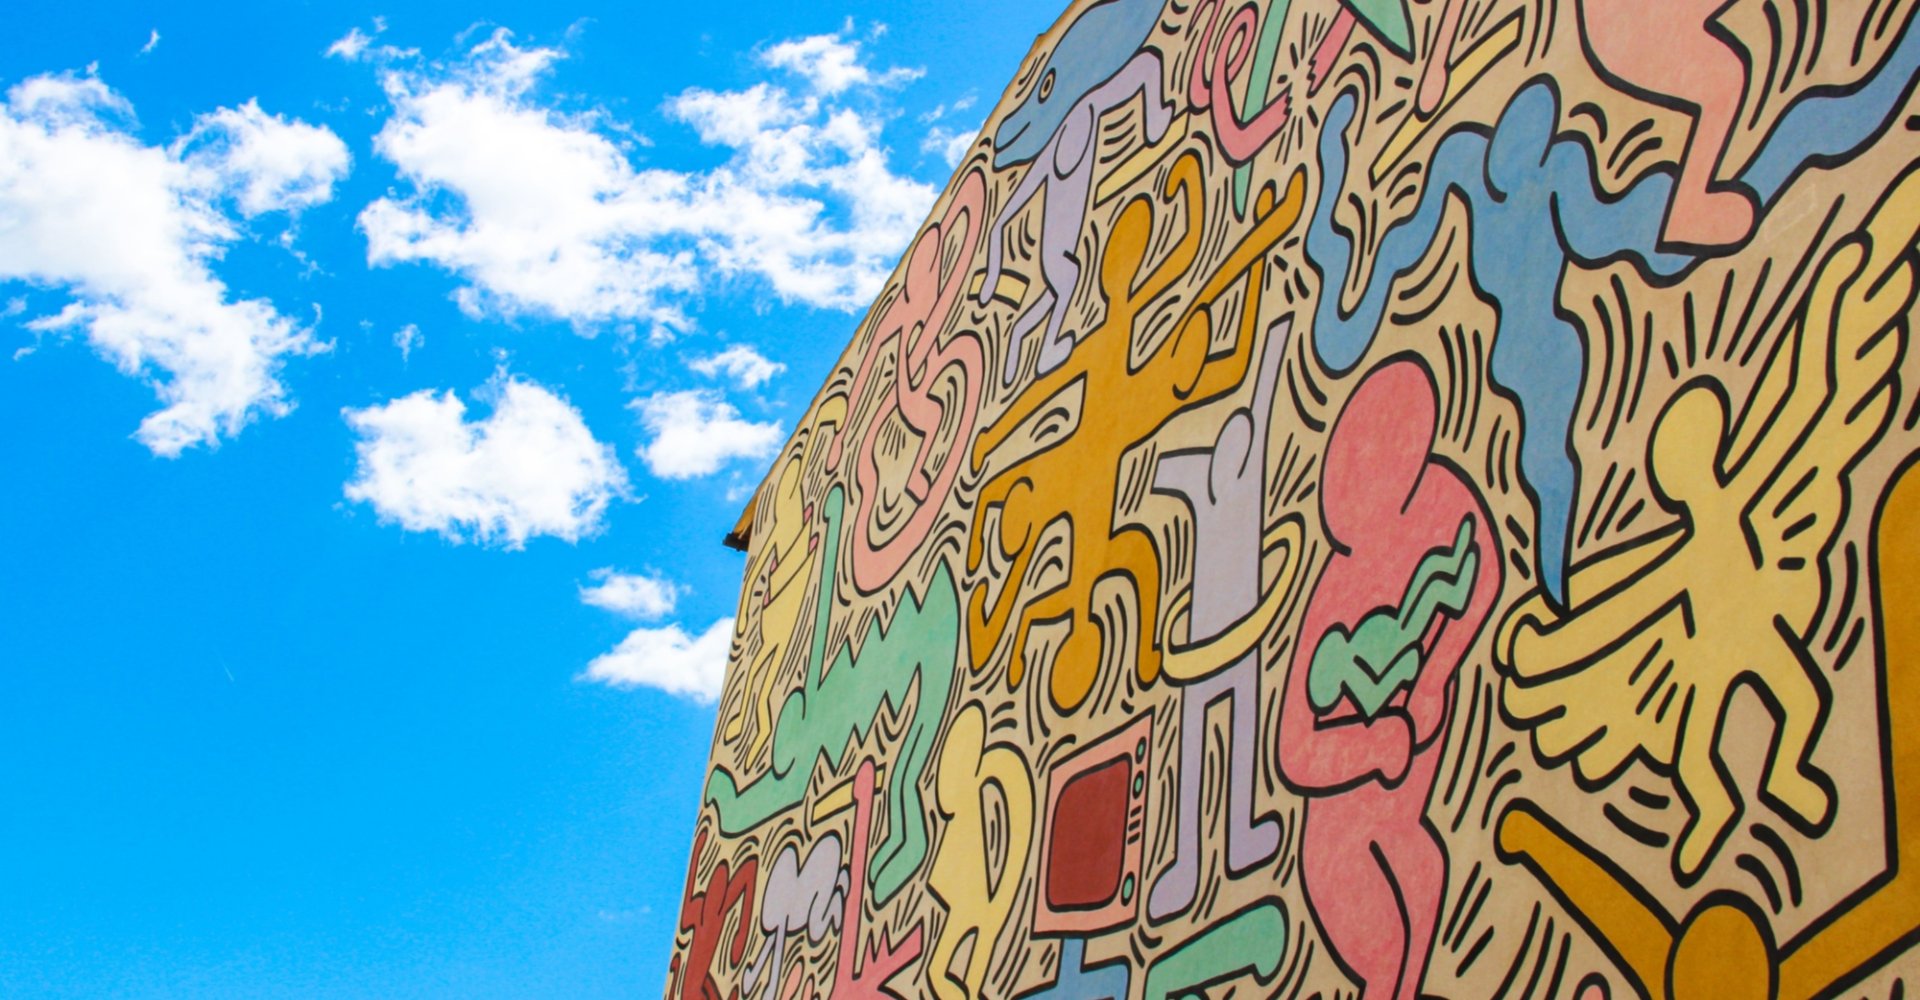 Das Wandbild Tuttomondo von Keith Haring